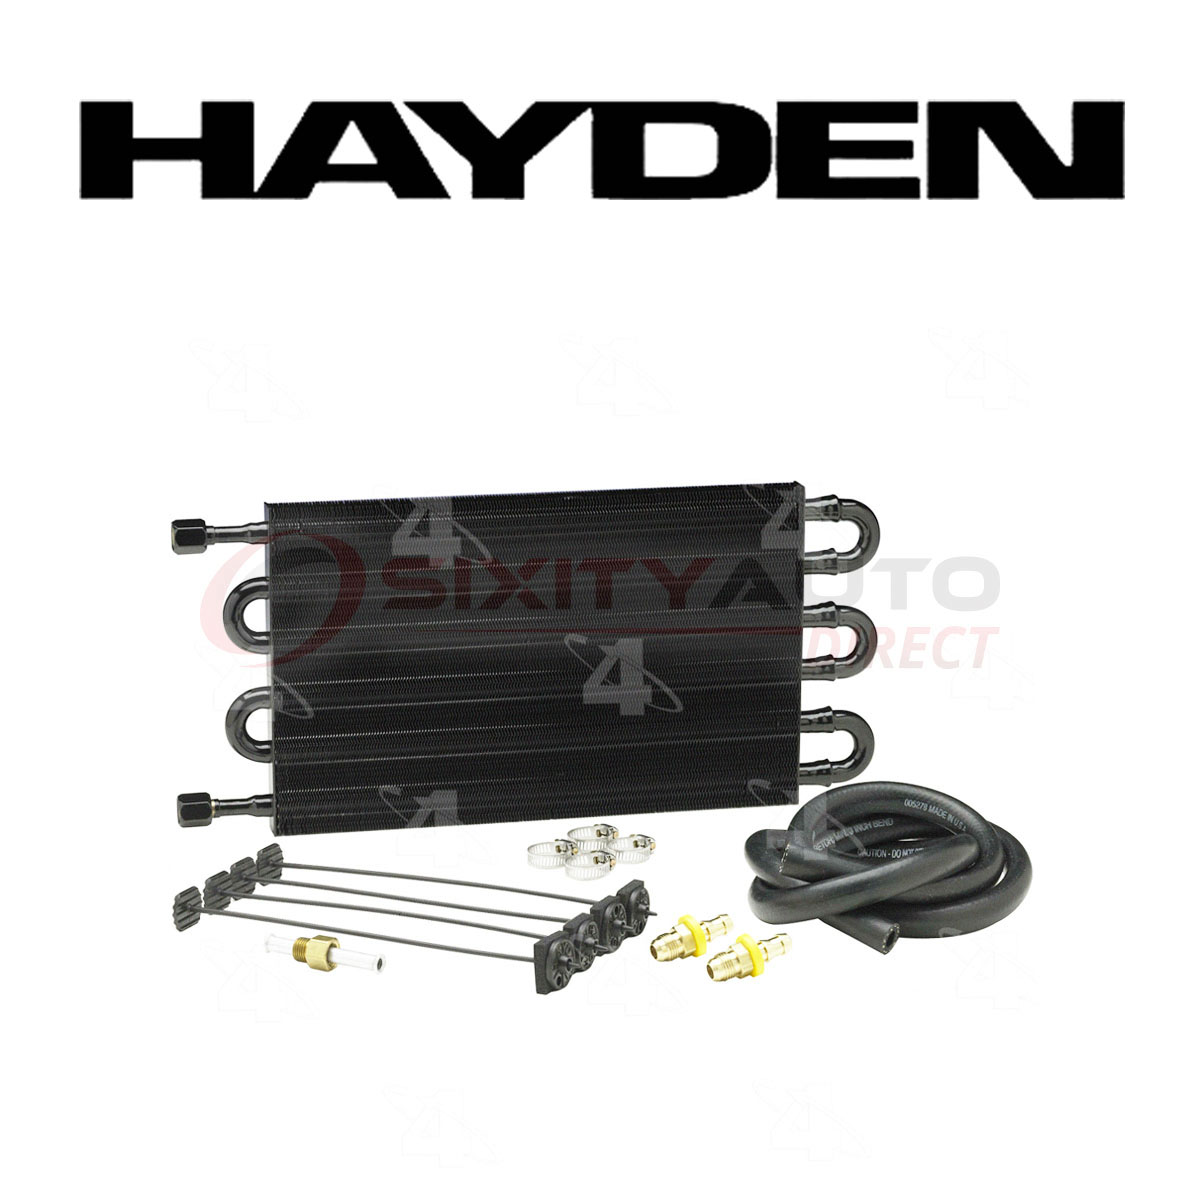 Hayden Transmission Oil Cooler for 2002-2014 Chrysler Town & Country 3 2005 Chrysler Town And Country Transmission Cooler